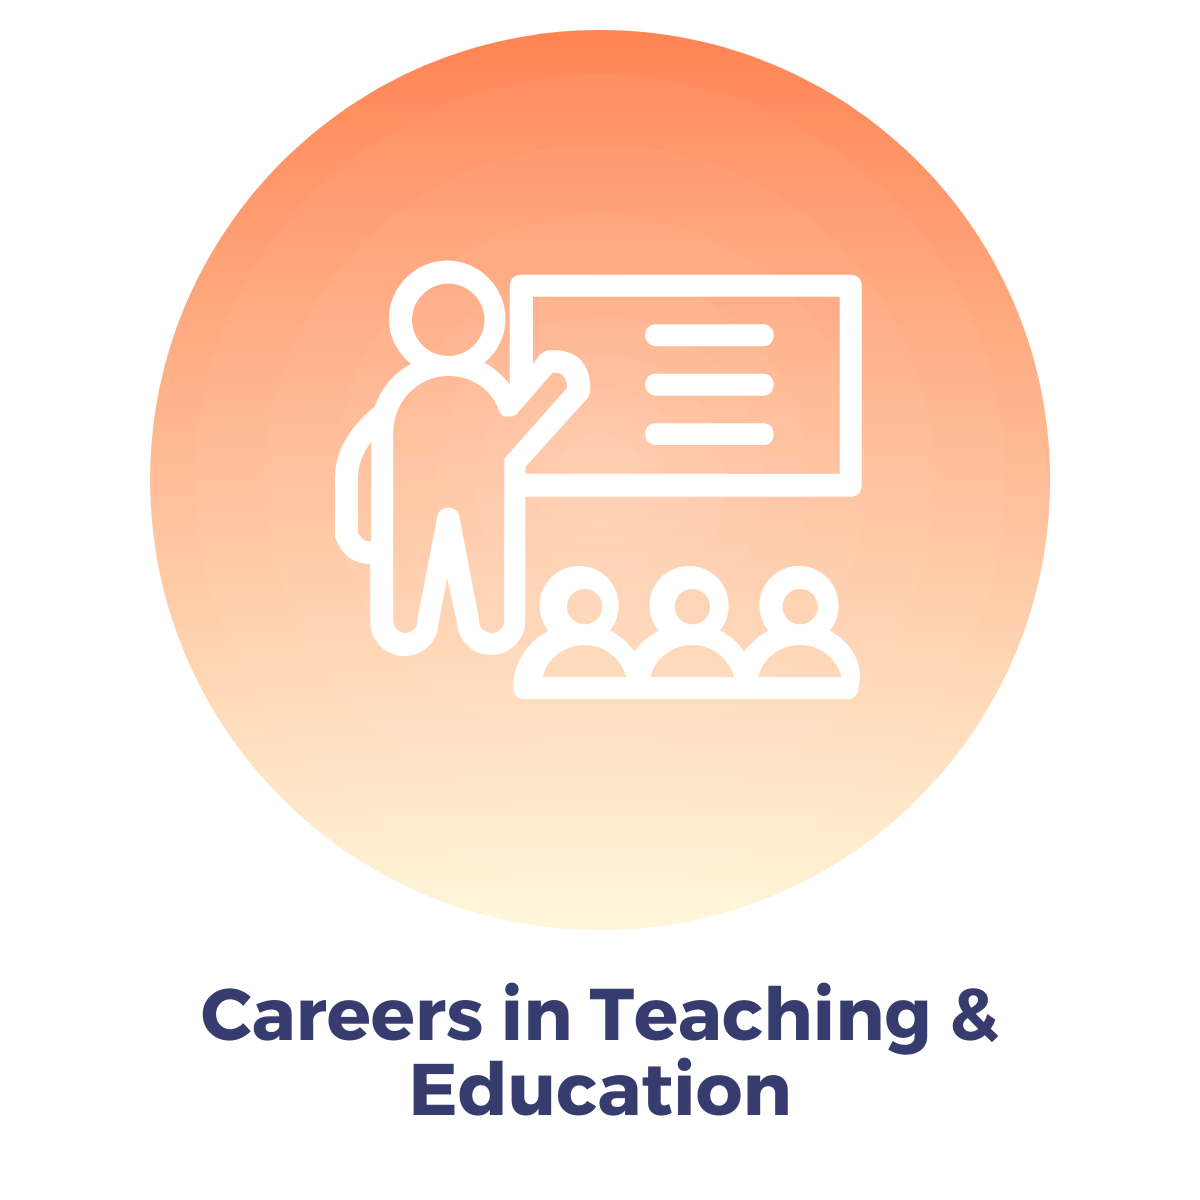 Careers in Teaching & Education